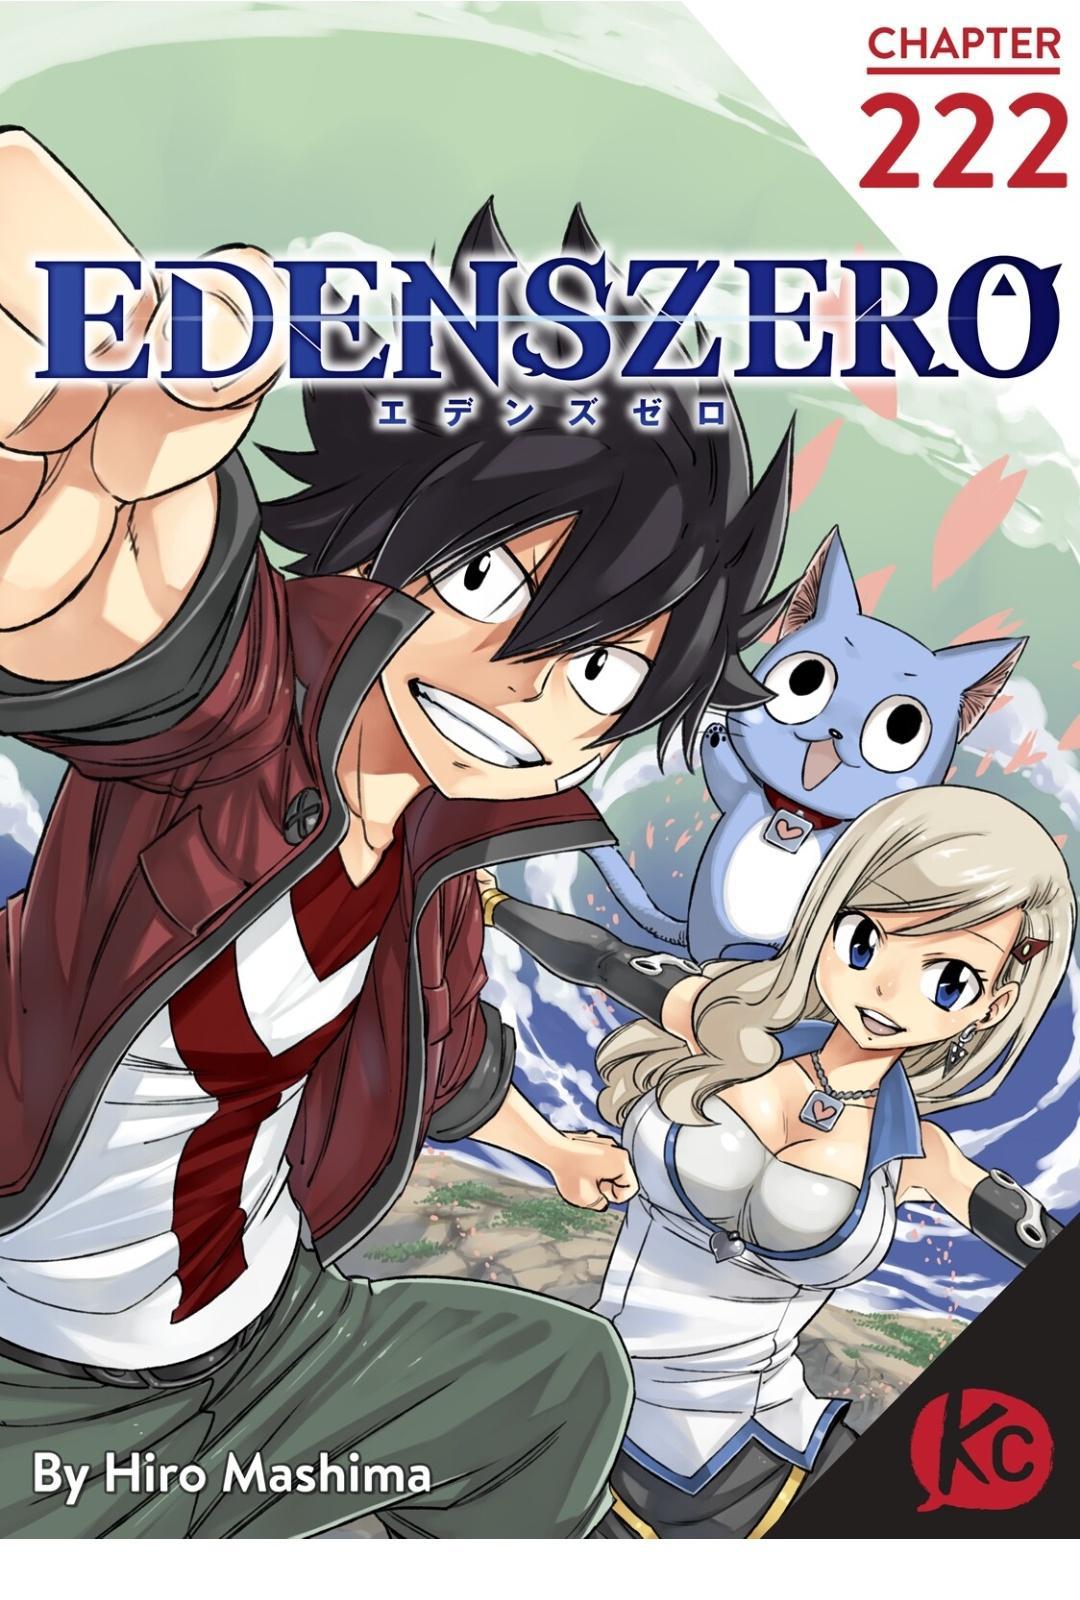 Edens Zero Chapter 222 image 01